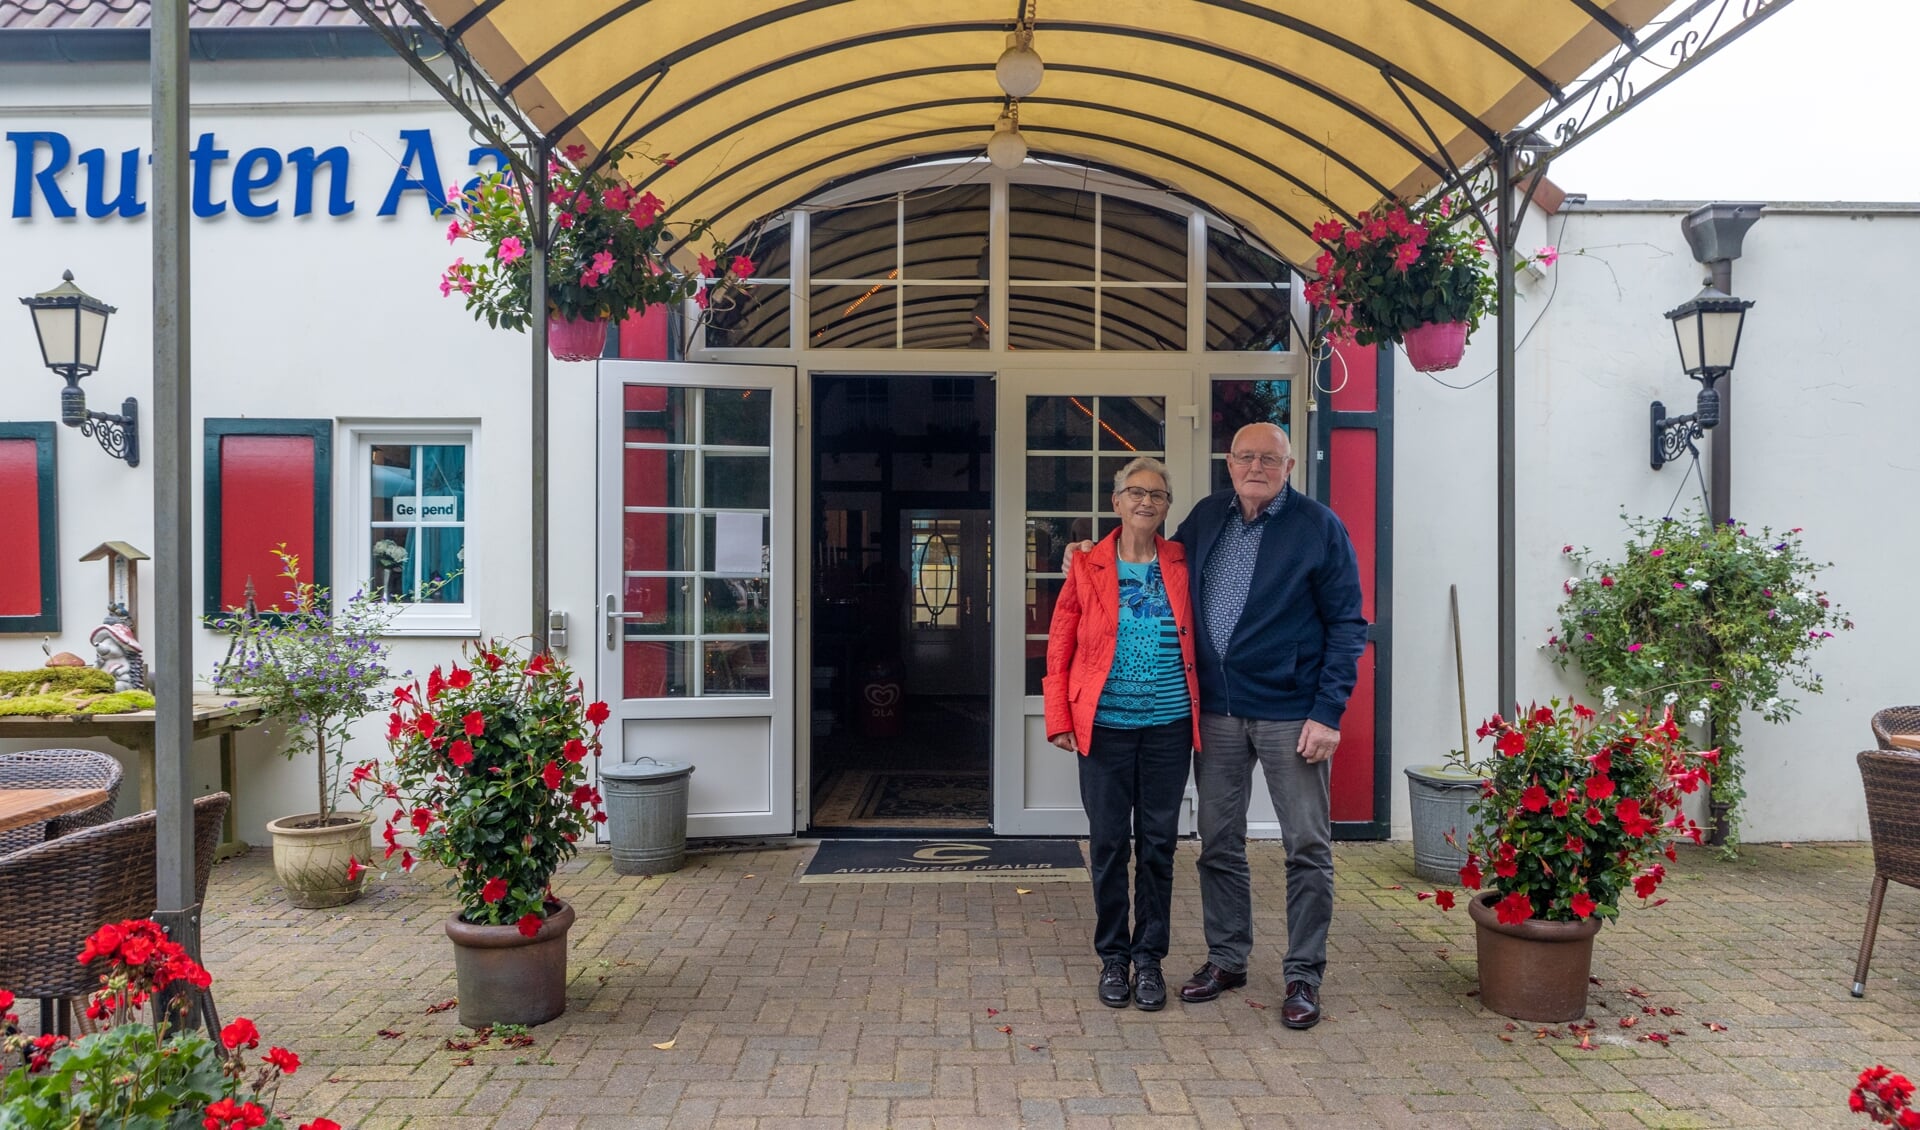 Tjeerd en Wimmie Bakker hebben hun 60-jarig huwelijksjubileum gevierd met een familie-etentje.